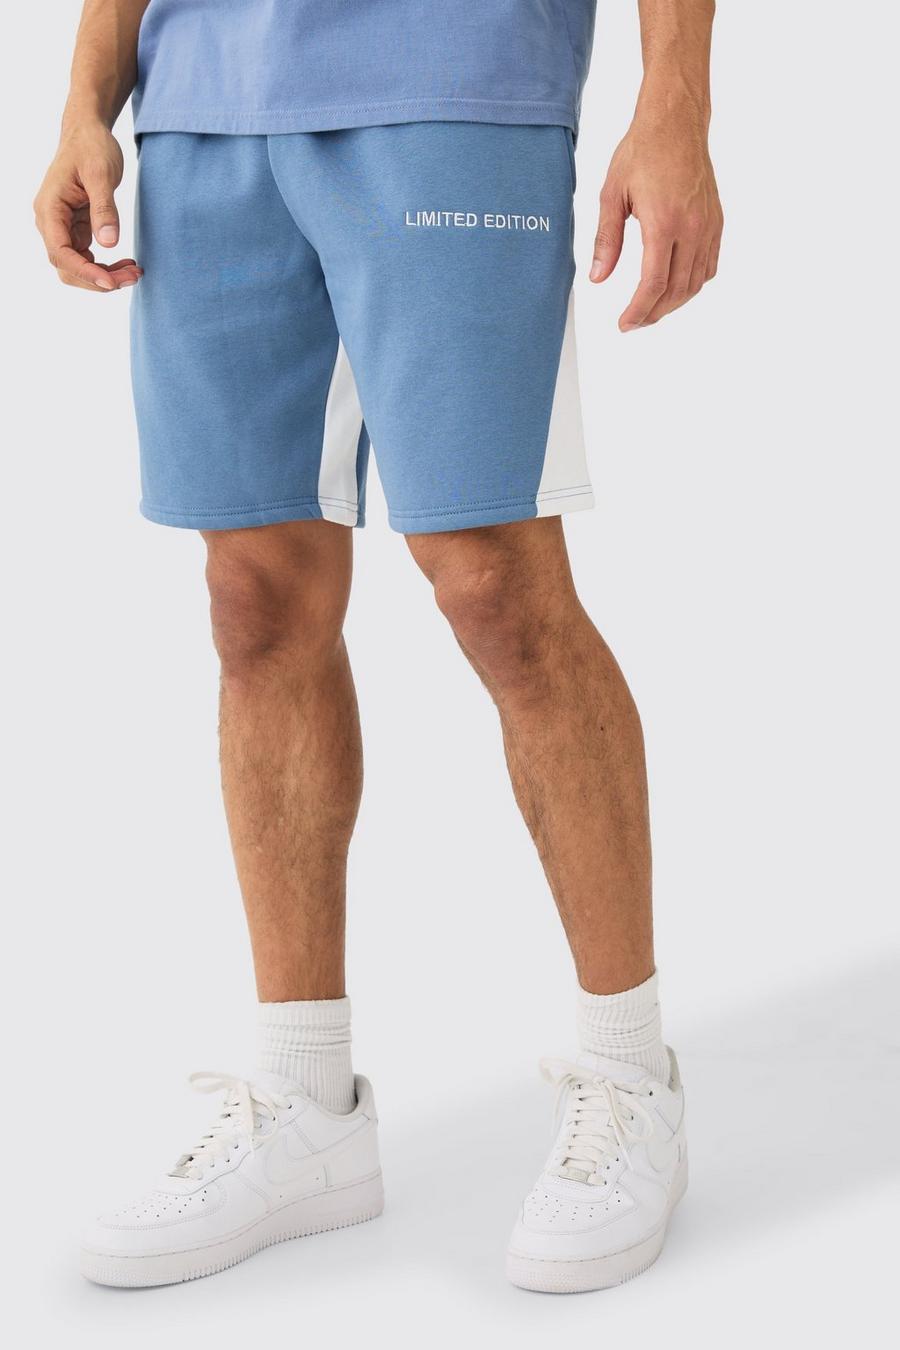 Pantaloncini rilassati con inserti Limited Edition, Dusty blue